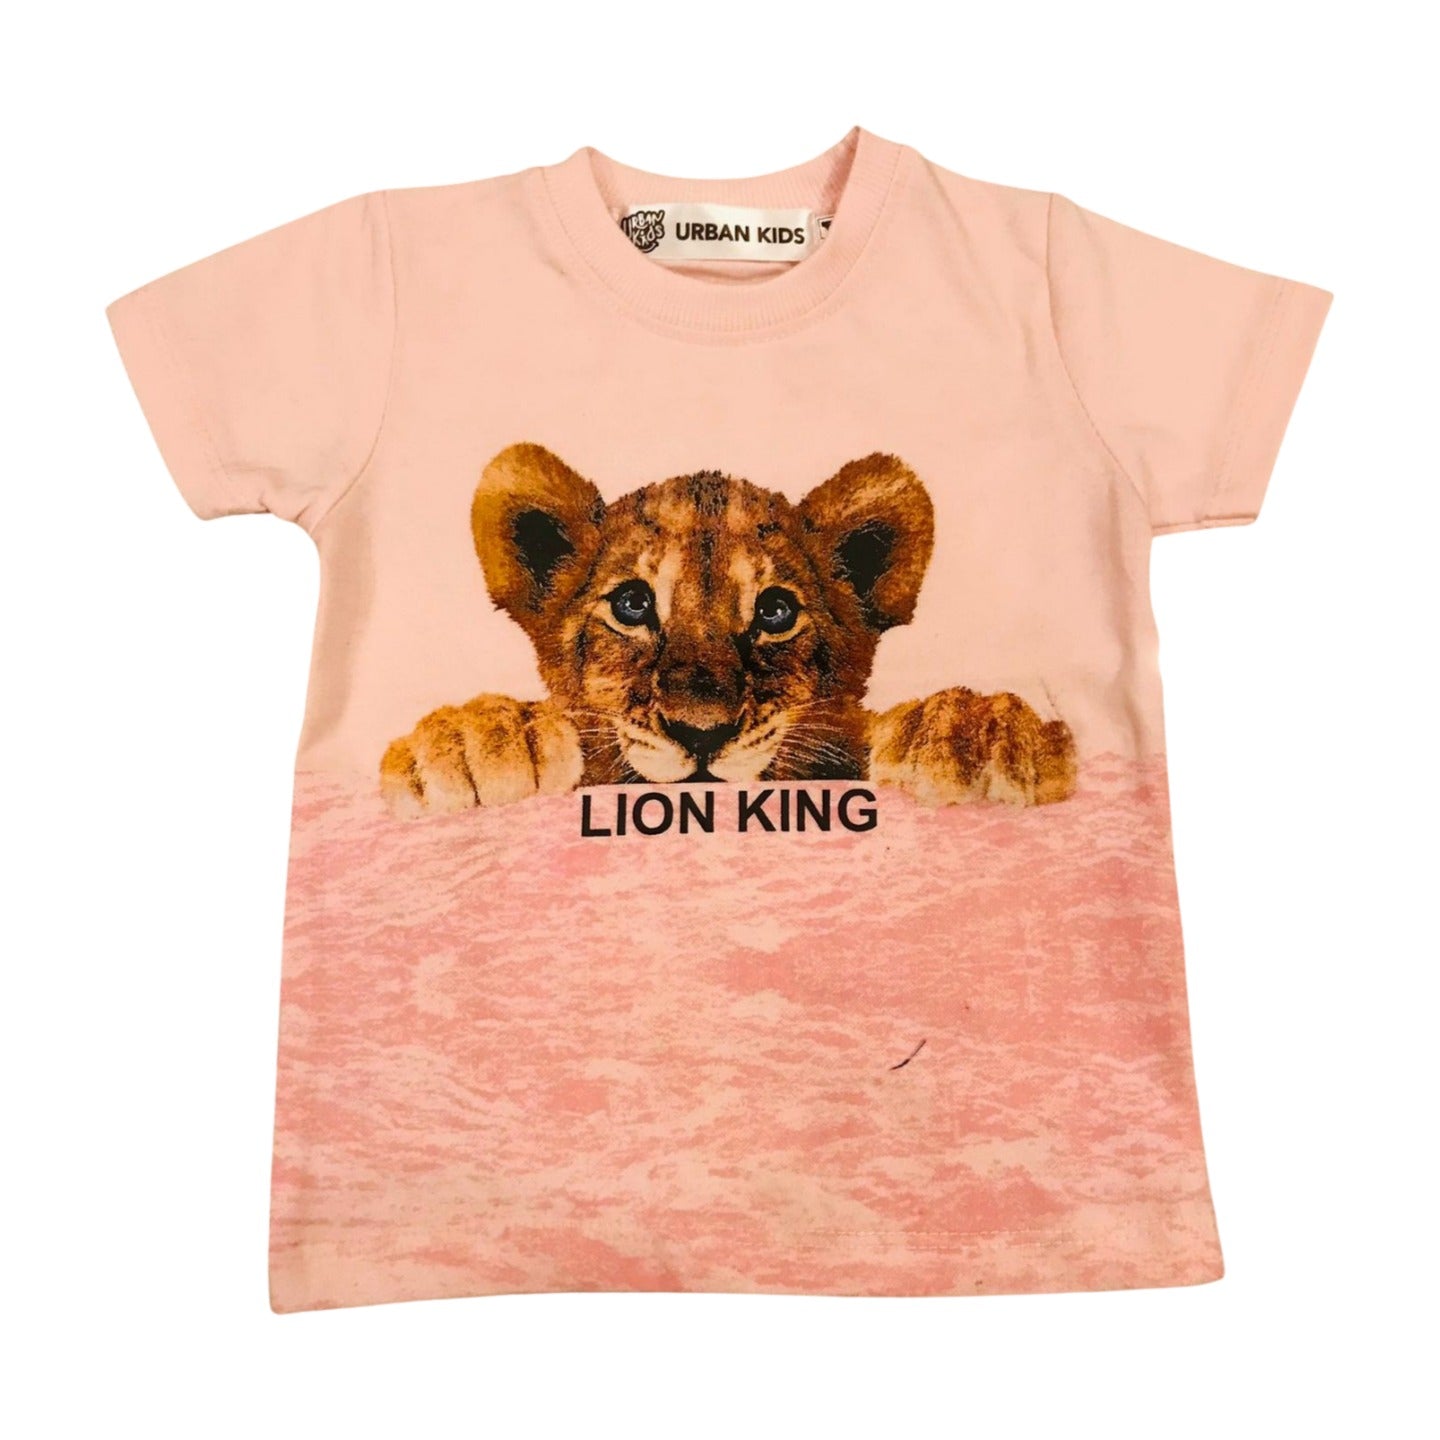 Lion King Shirt & Denim Shorts